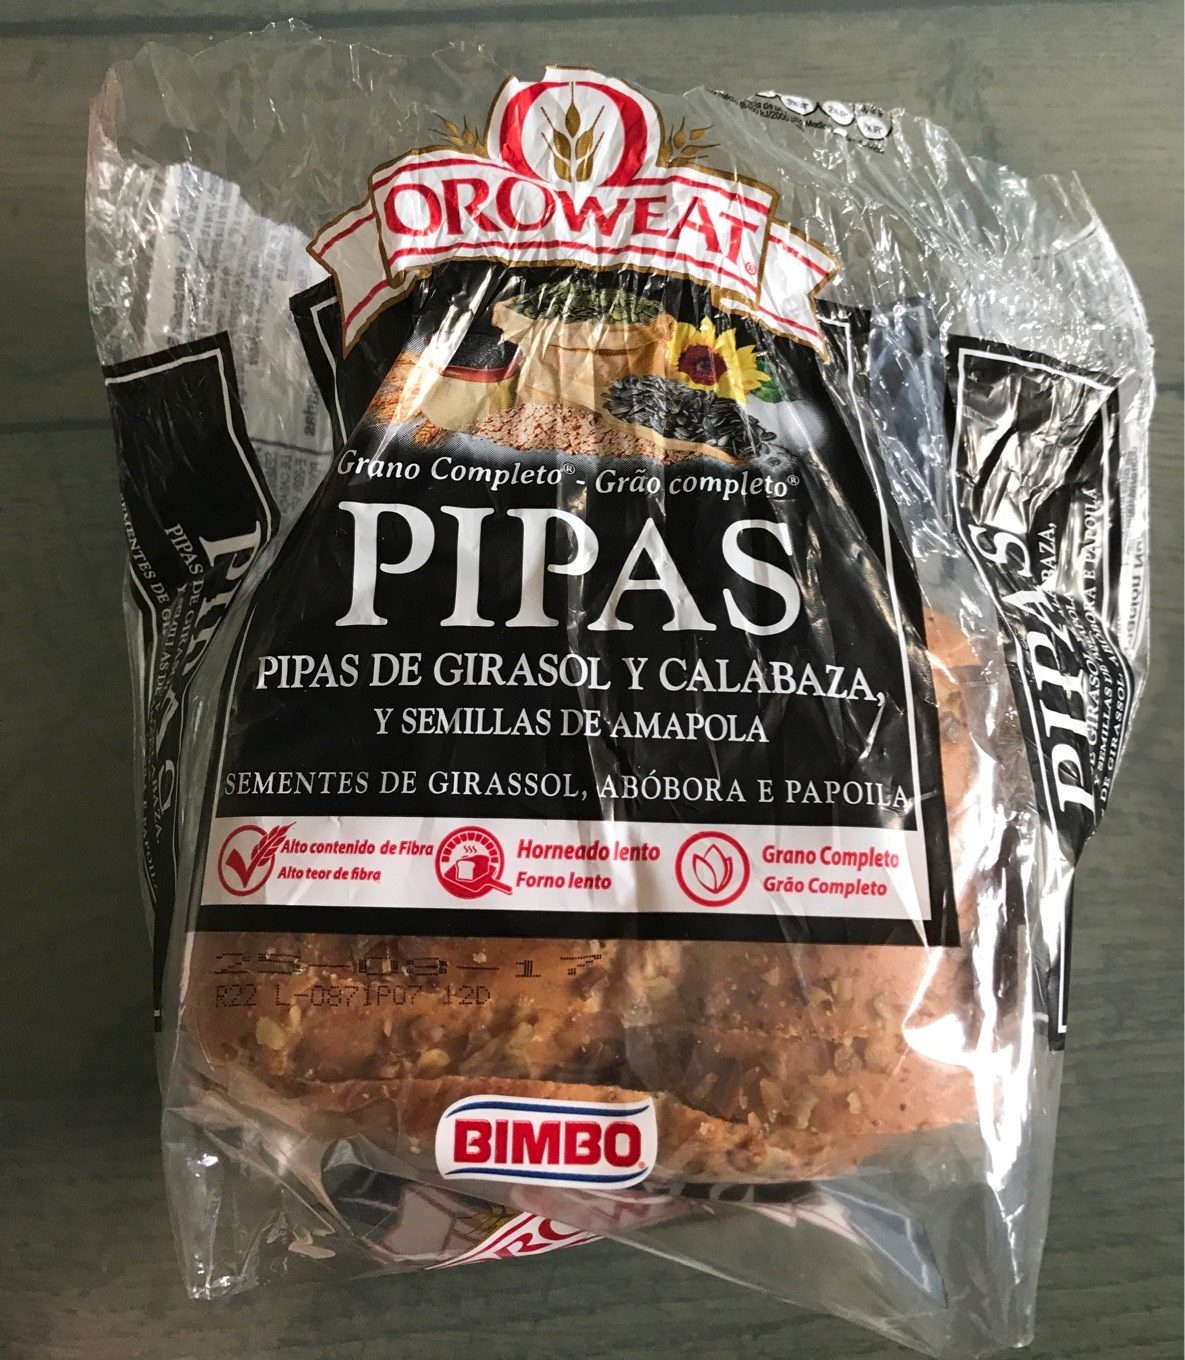 Pan de Pipas de Girasol y Calabaza Oroweat - Producte - es